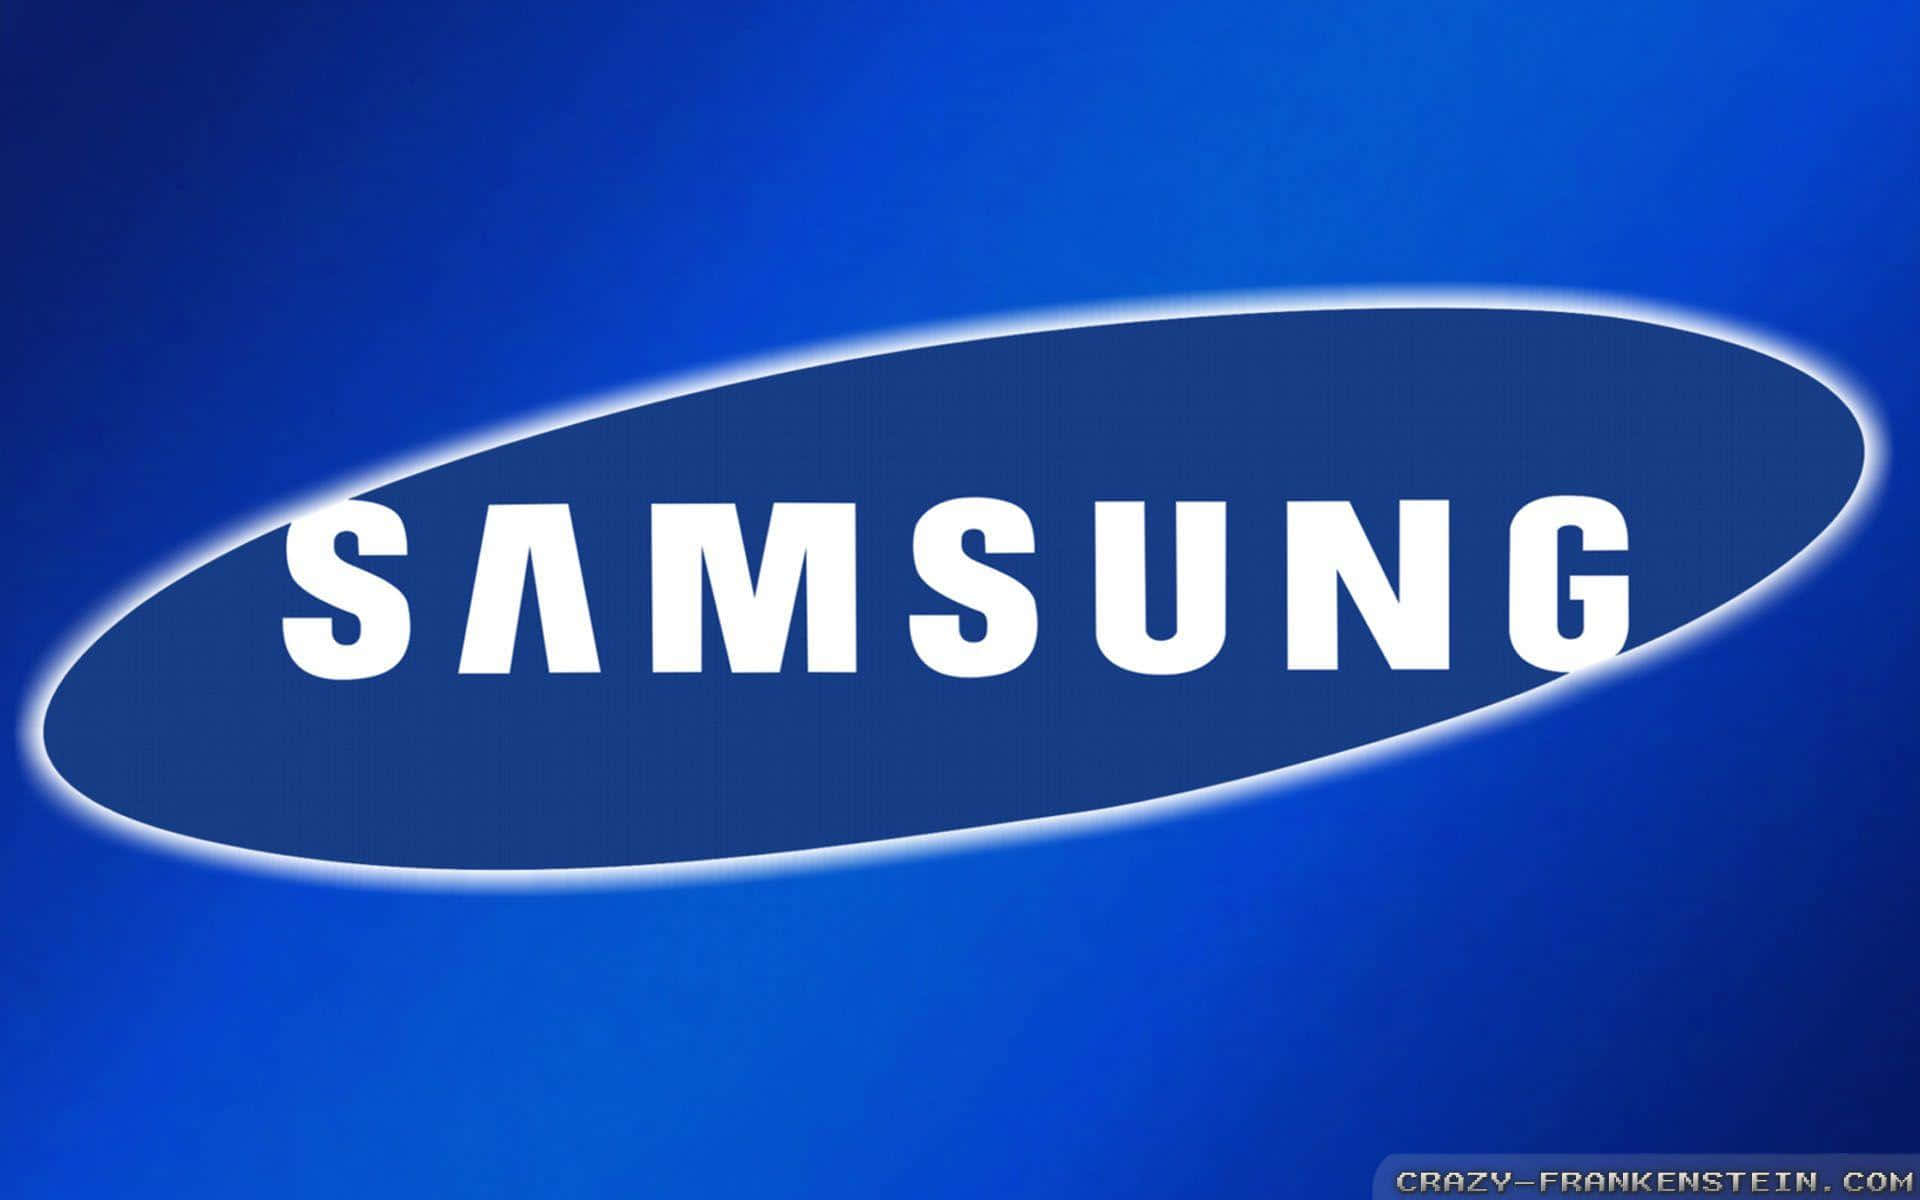 Et billede af en moderne Samsung-enhed, skarp og levende.